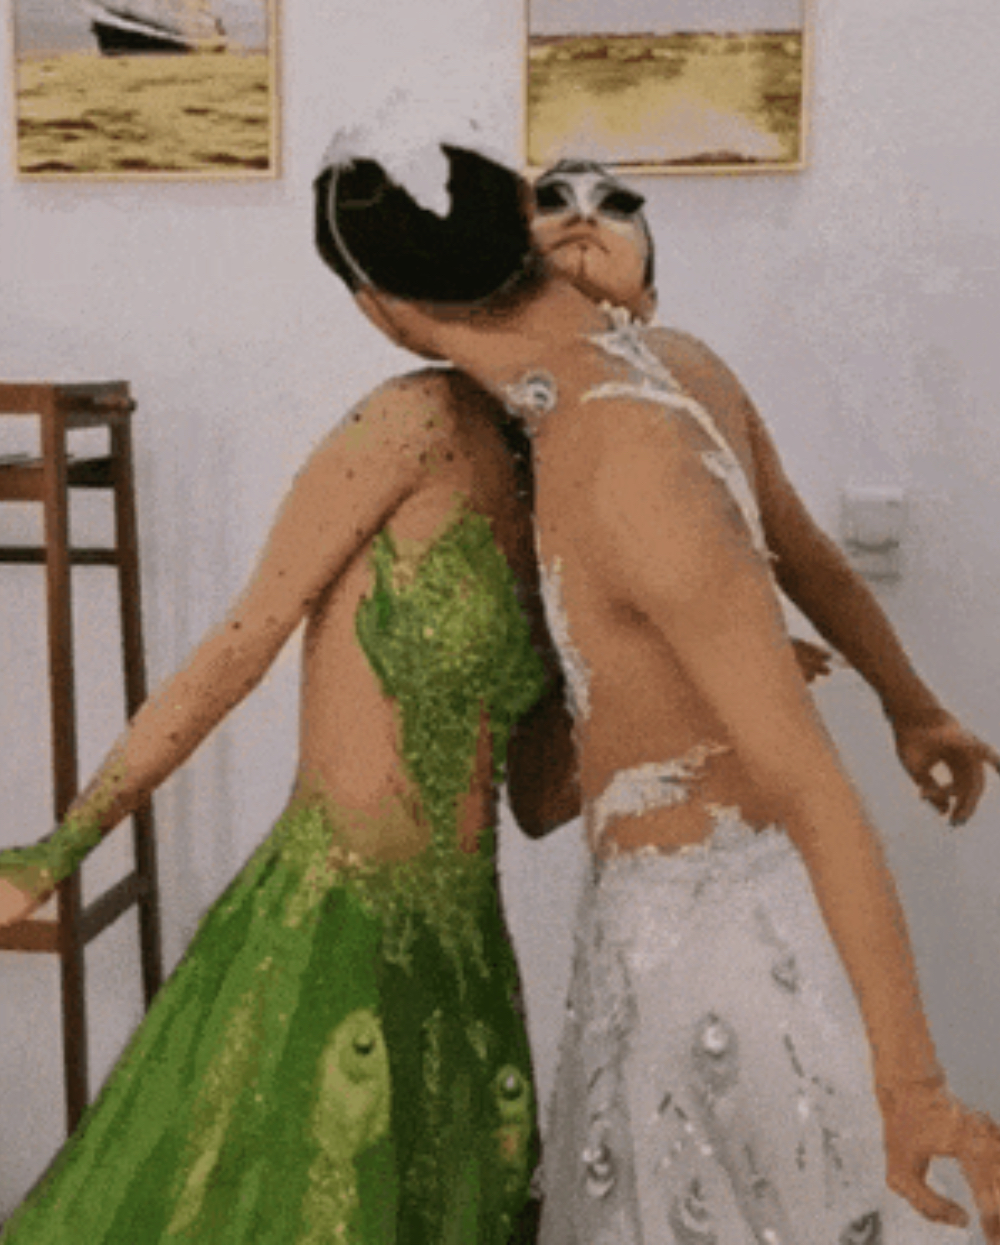 楊麗萍徒弟肖蓉浩在短視頻平台發布的男舞者貼身親密舞蹈也曾引發爭議。 